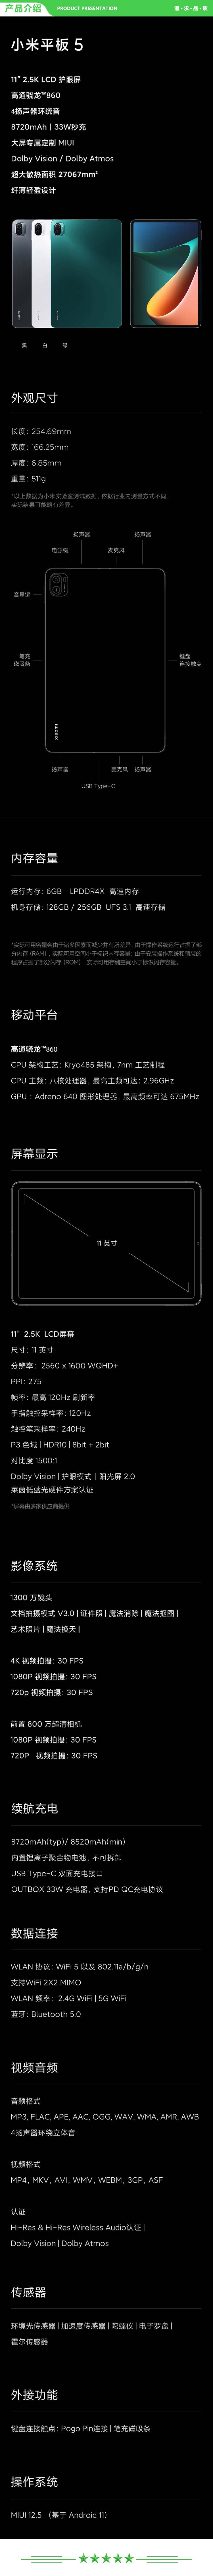 小米 xiaomi 平板5 平板电脑（11英寸2.5K高清 120Hz 骁龙860 6G+256GB 33W快充 杜比影音娱乐办公 绿色）.jpg